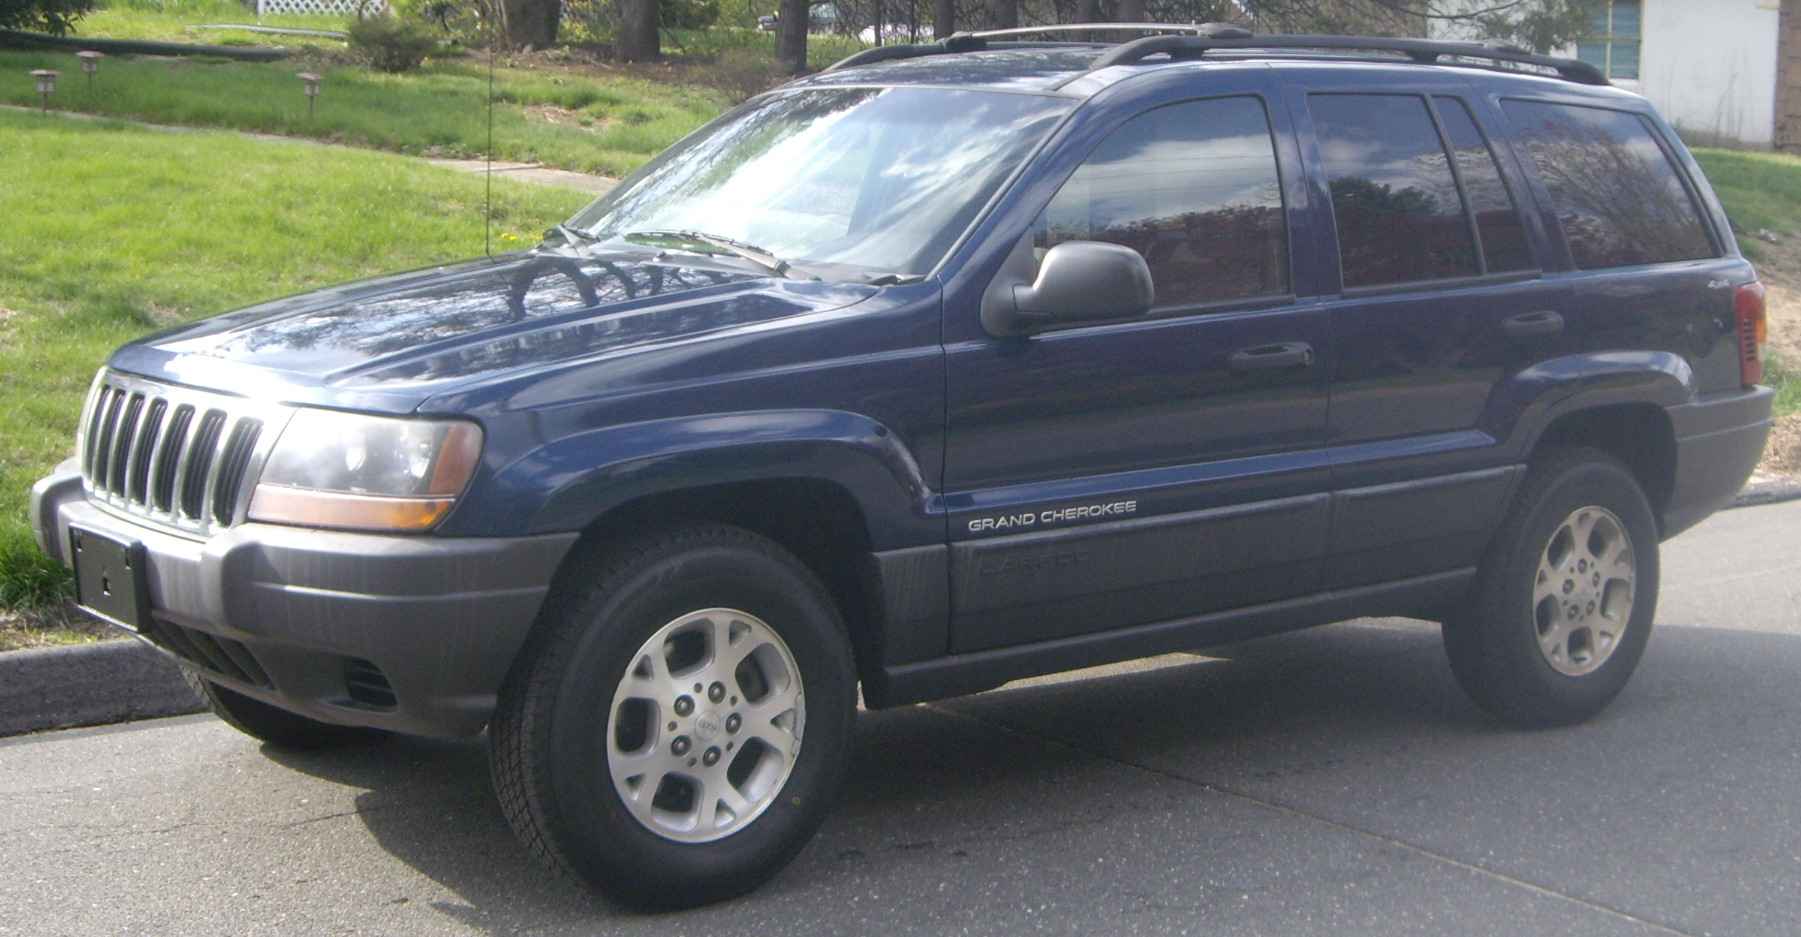 Джип 2000 года. Jeep Cherokee 2000. Grand Cherokee 2000. Джип Гранд Чероки 2000 года. Jeep Grand Cherokee Laredo 2000.